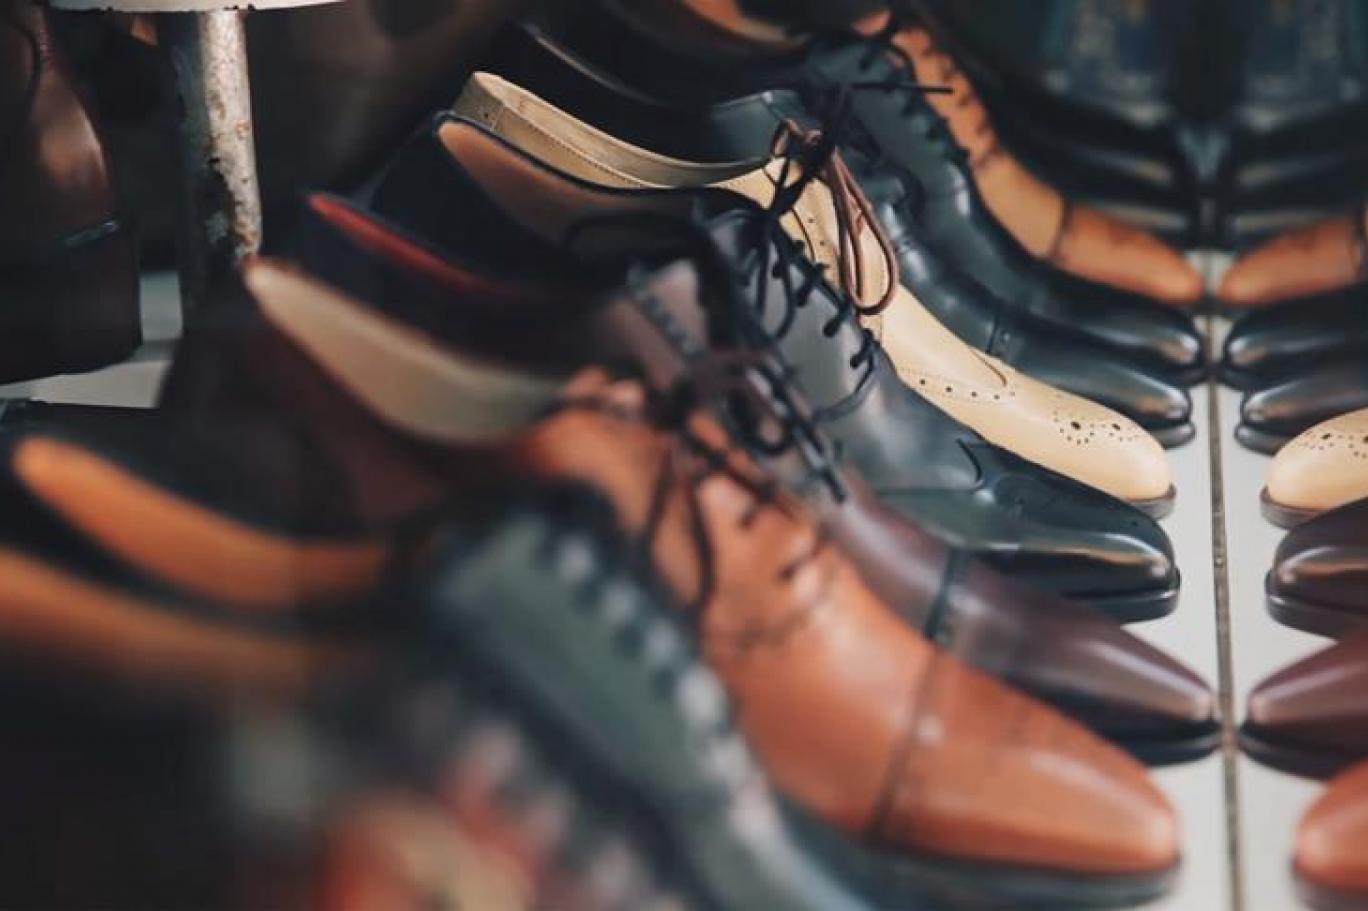 2019 yılında vatandaşın en çok şikayet ettiği ürün ayakkabı oldu |  Independent Türkçe